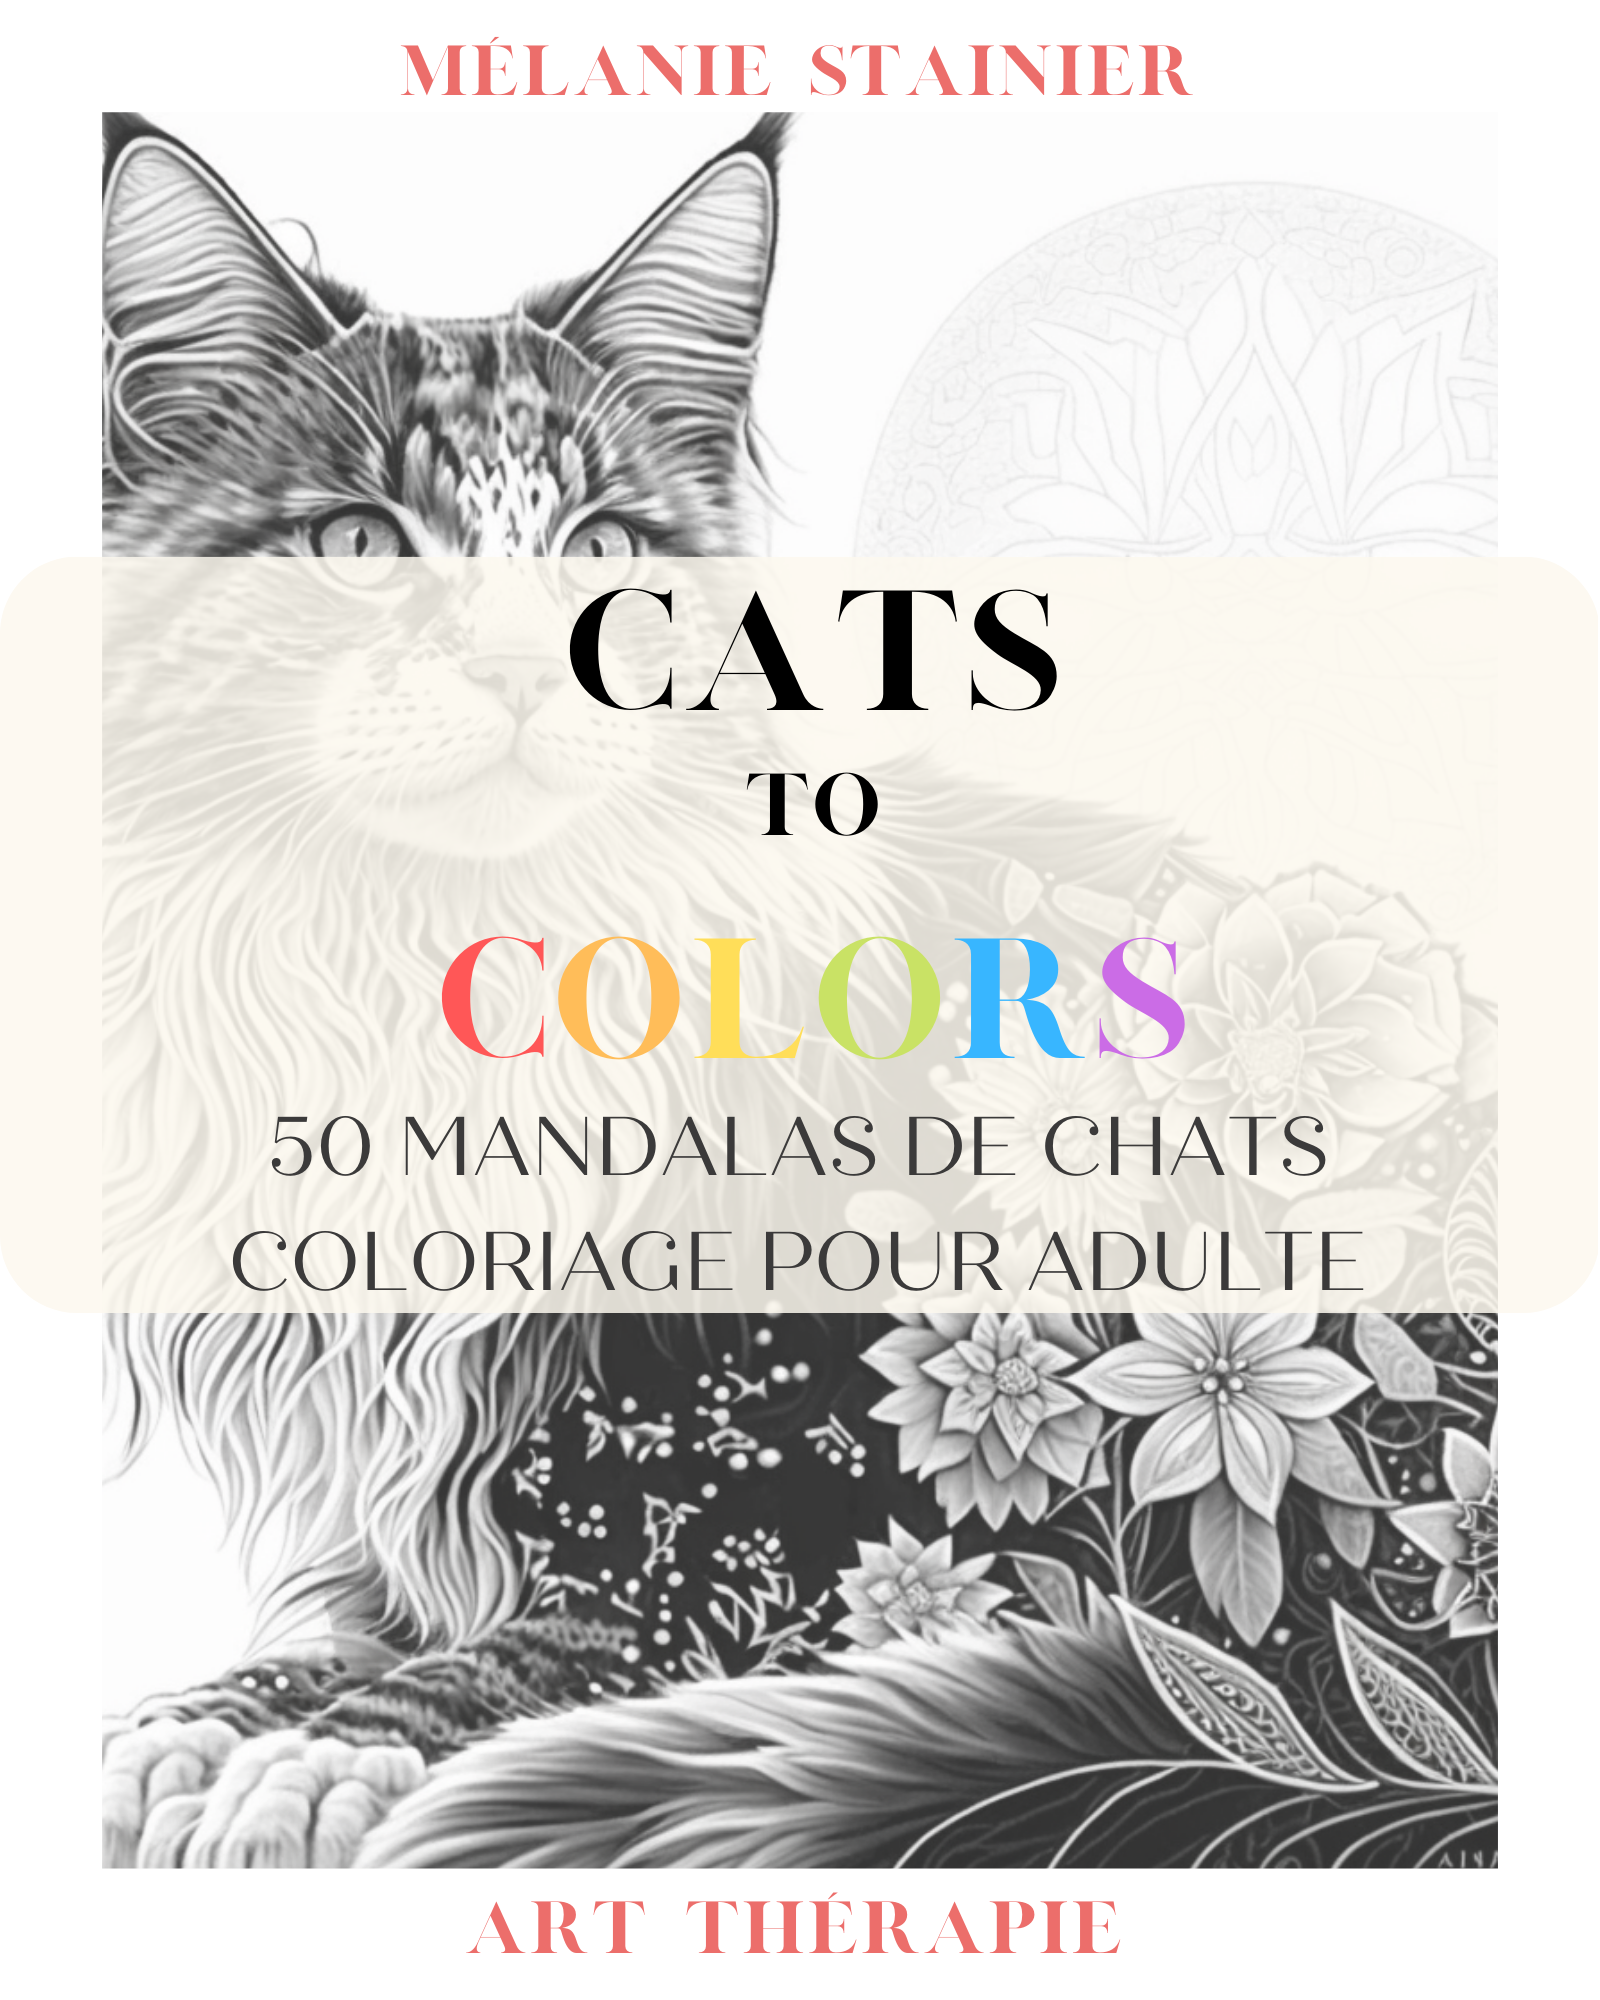 Mandalas à colorier : chats